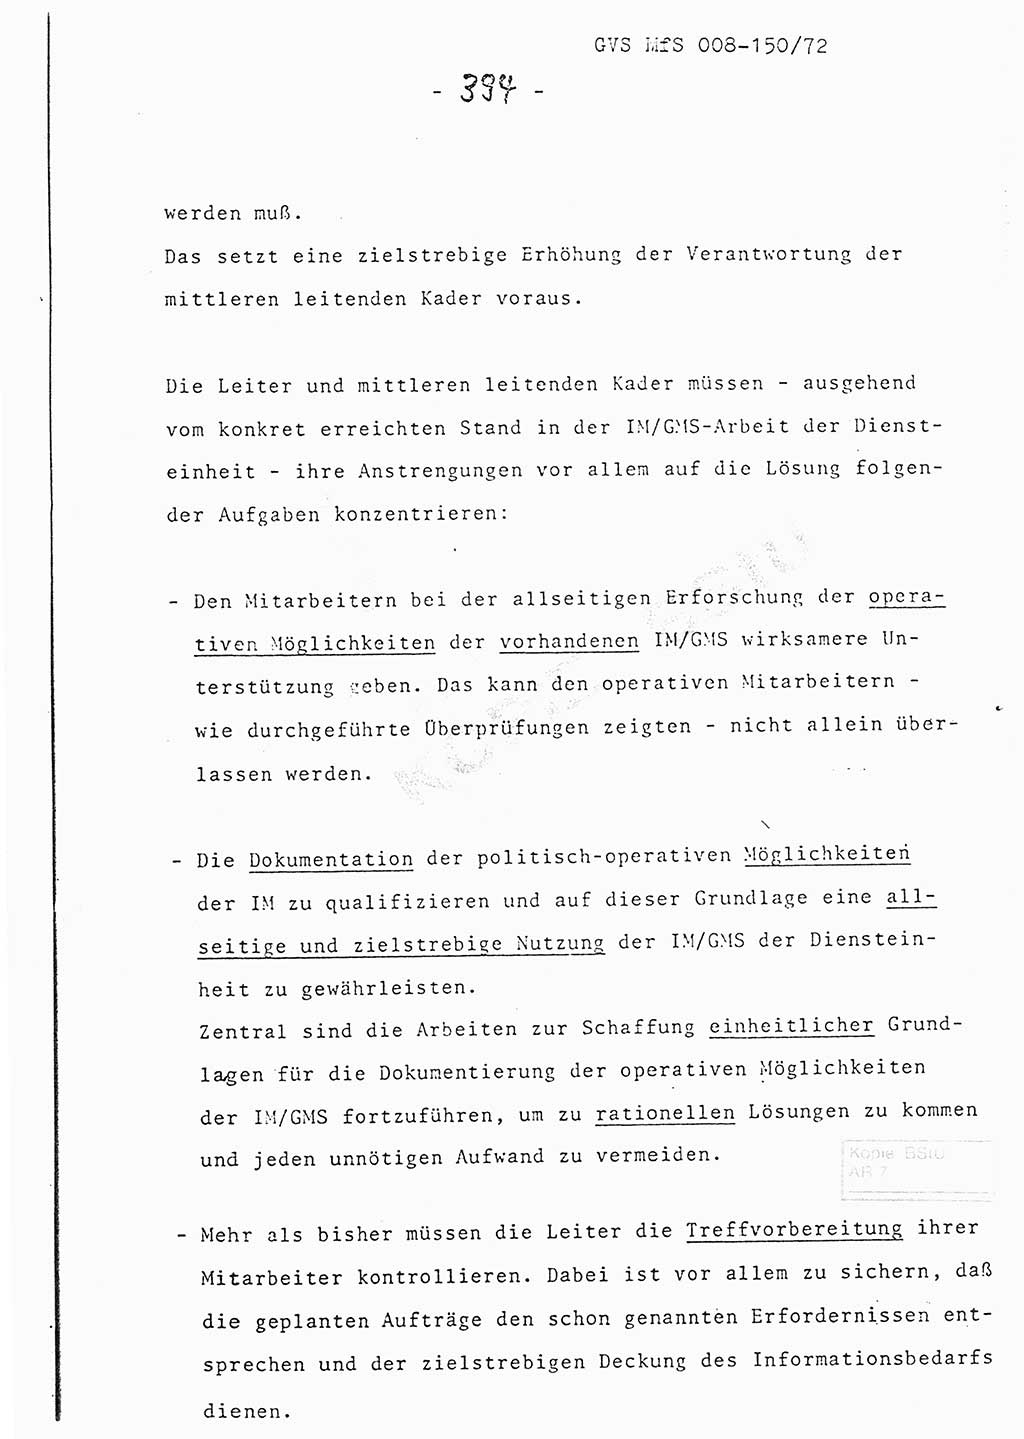 Referat (Entwurf) des Genossen Minister (Generaloberst Erich Mielke) auf der Dienstkonferenz 1972, Ministerium für Staatssicherheit (MfS) [Deutsche Demokratische Republik (DDR)], Der Minister, Geheime Verschlußsache (GVS) 008-150/72, Berlin 25.2.1972, Seite 394 (Ref. Entw. DK MfS DDR Min. GVS 008-150/72 1972, S. 394)